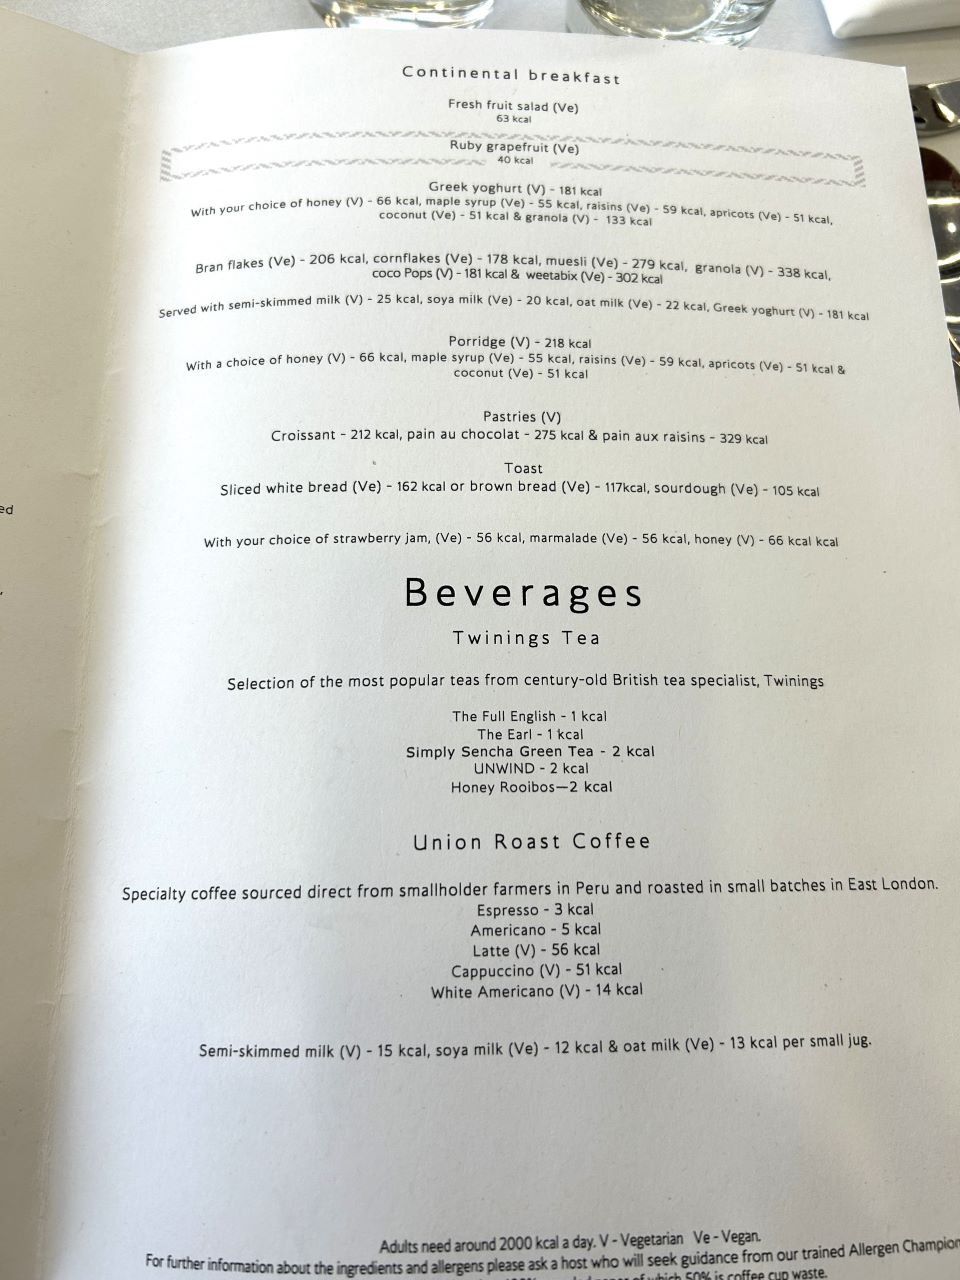 British Airways First Class Dining Beverage Menu